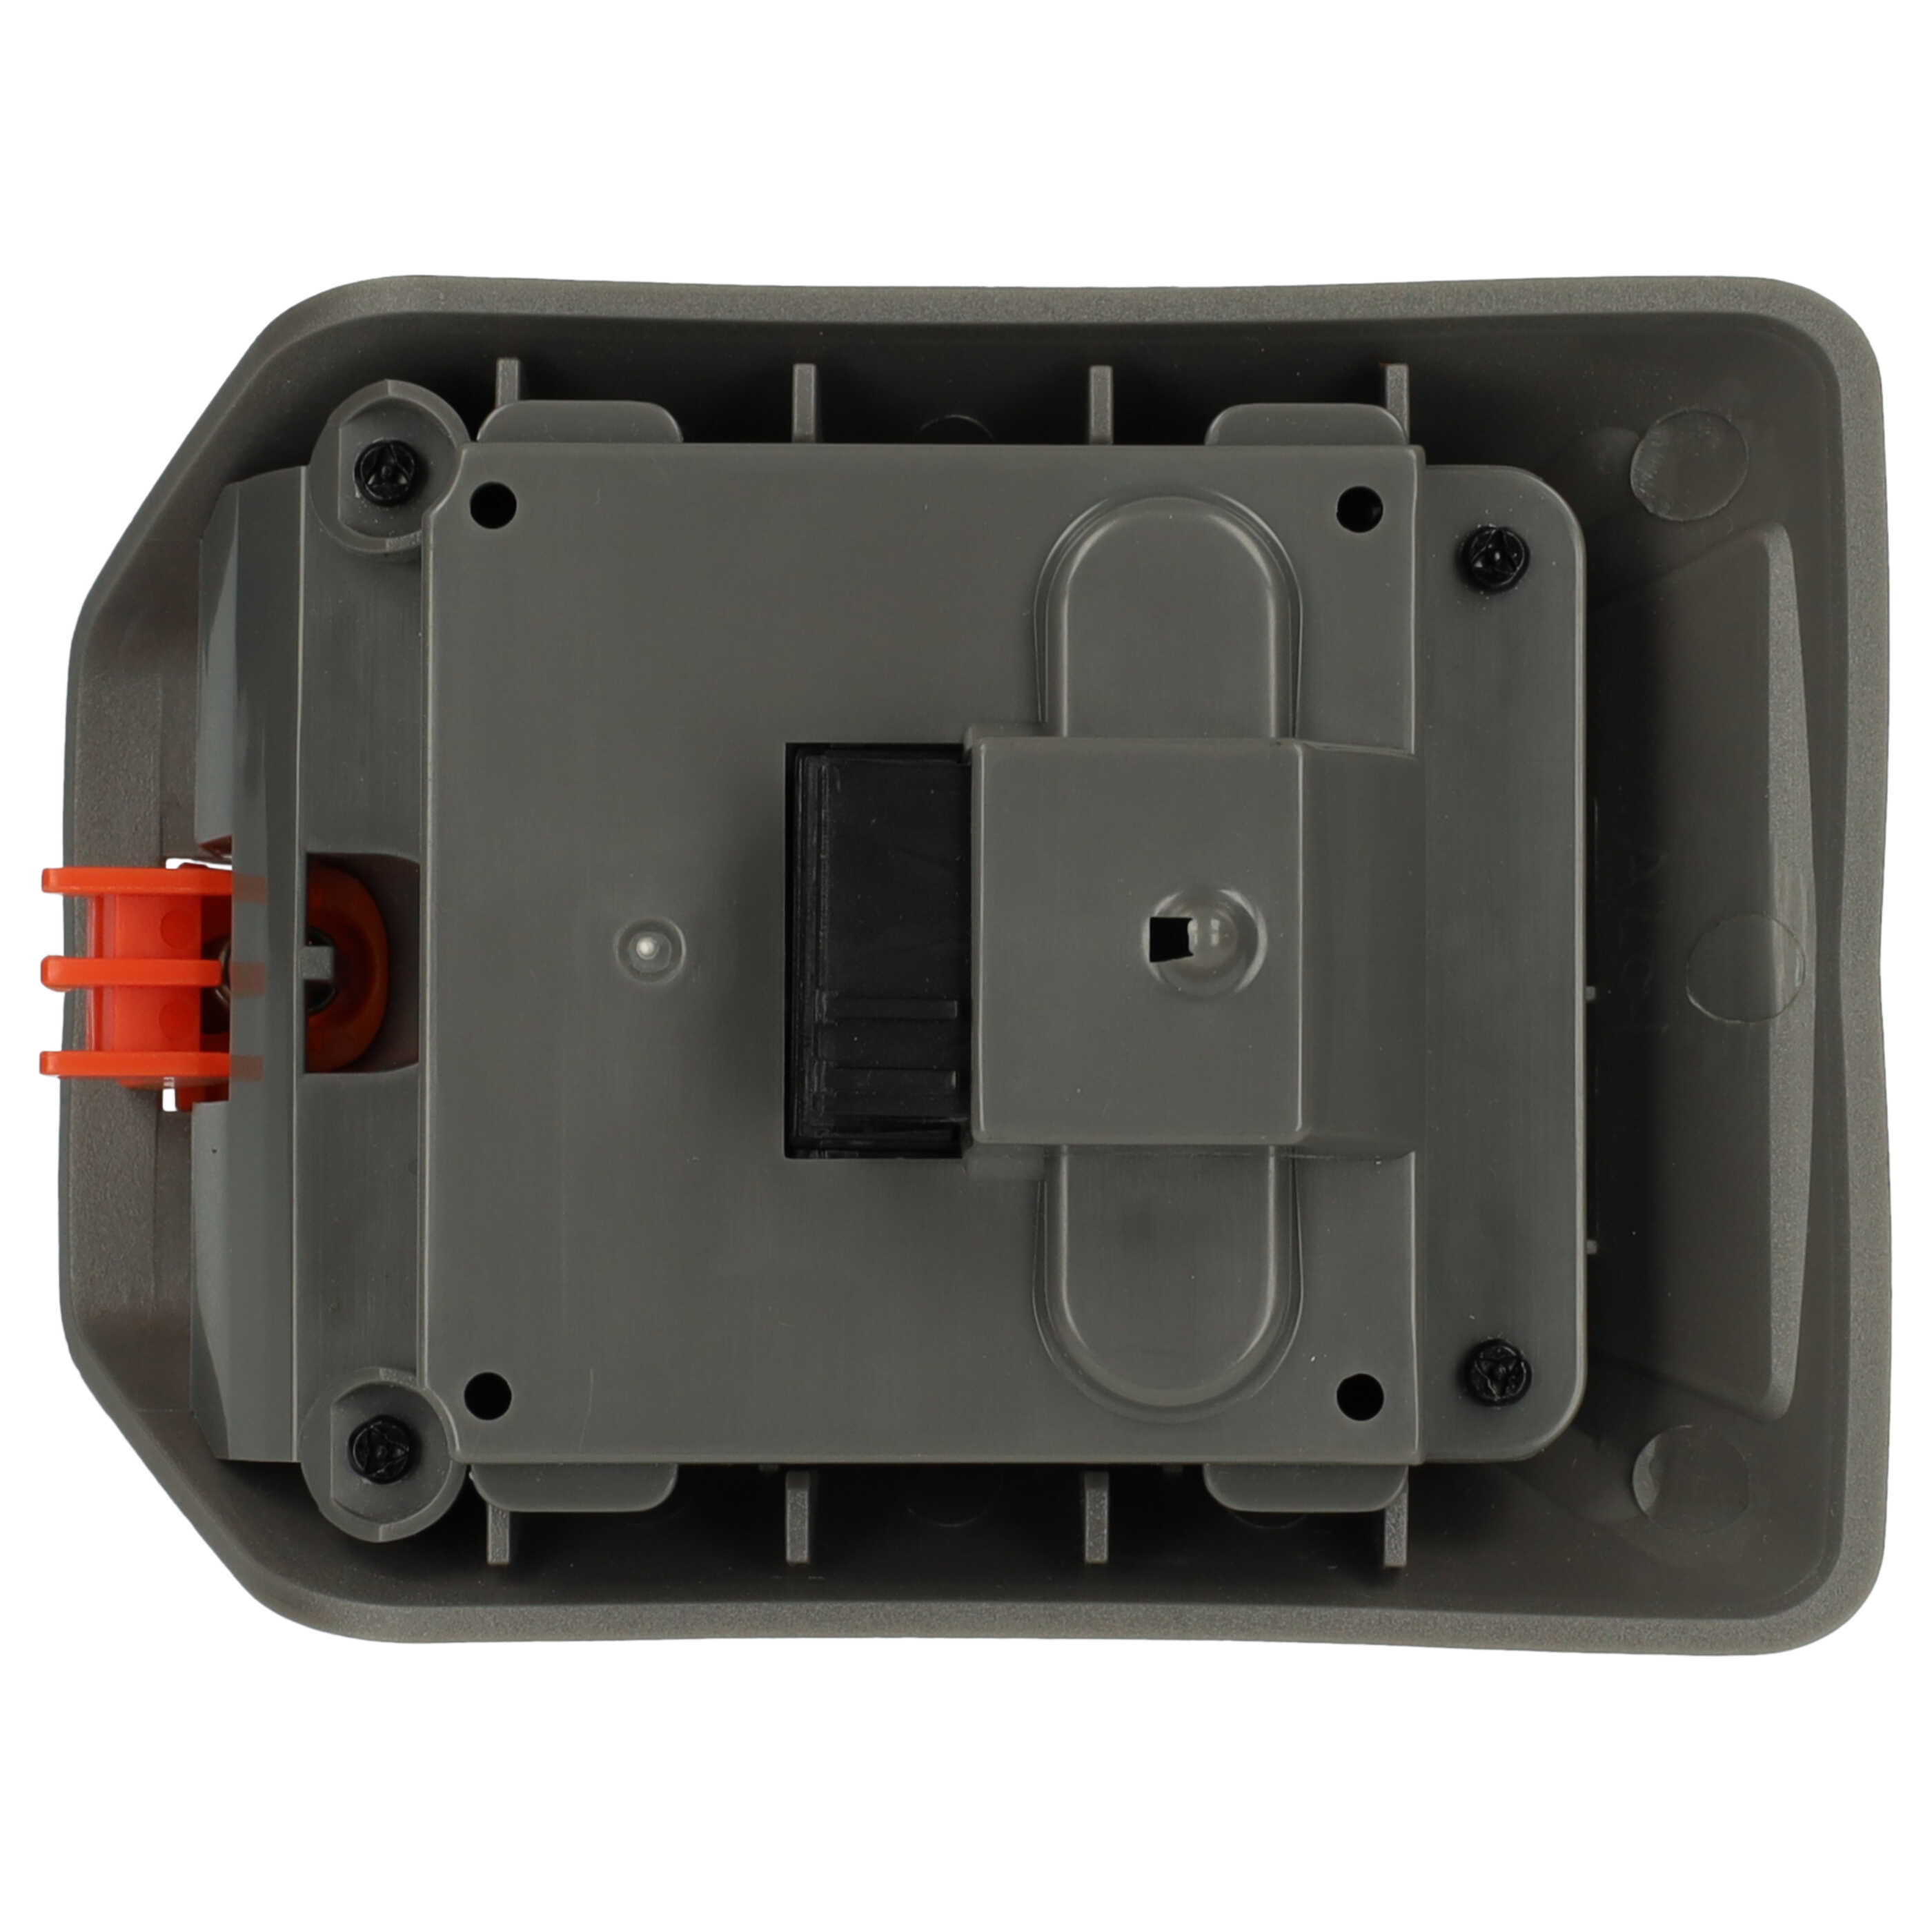 Batería reemplaza Gardena 008A231 para caja de manguera Gardena - 2500 mAh 18 V Li-Ion